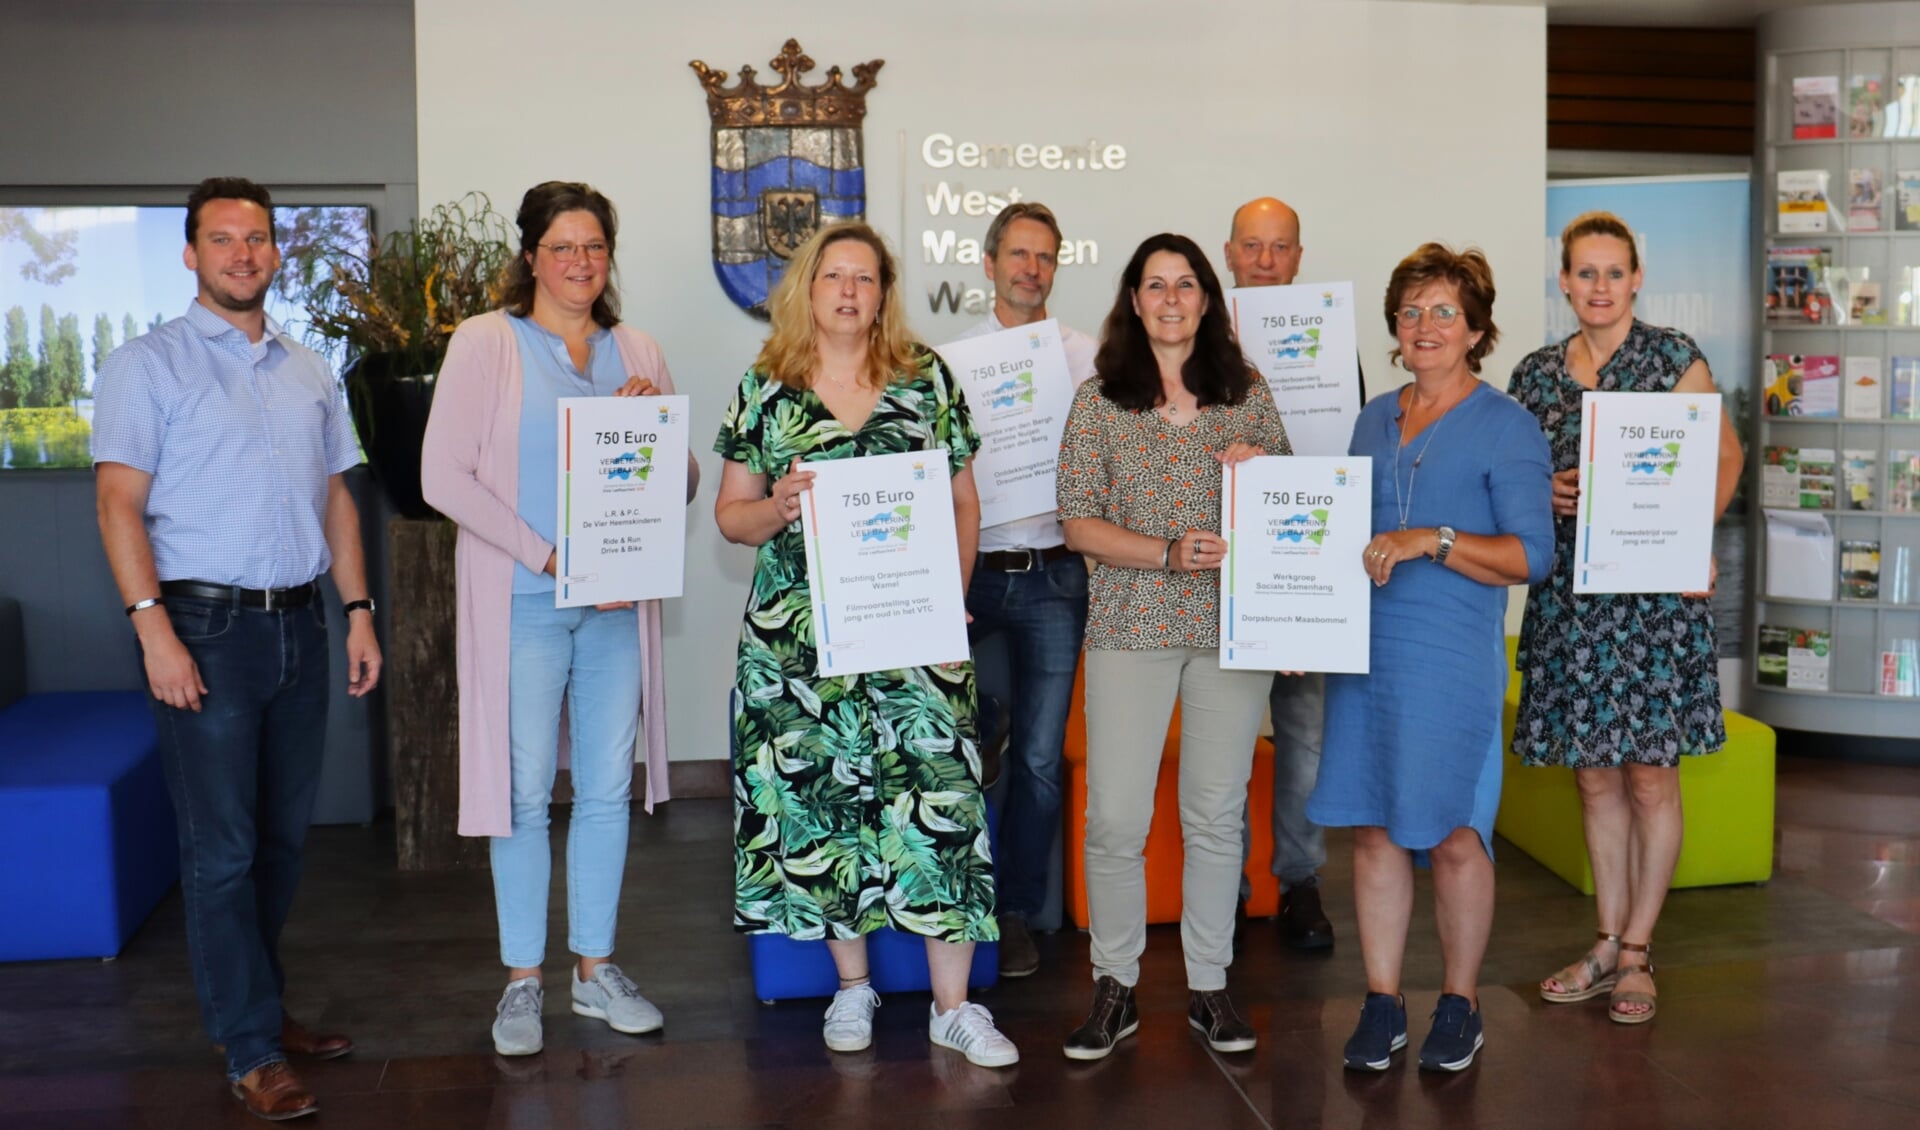 Leefbaarheidsinitiatieven beloon bij gemeente West Maas en Waal